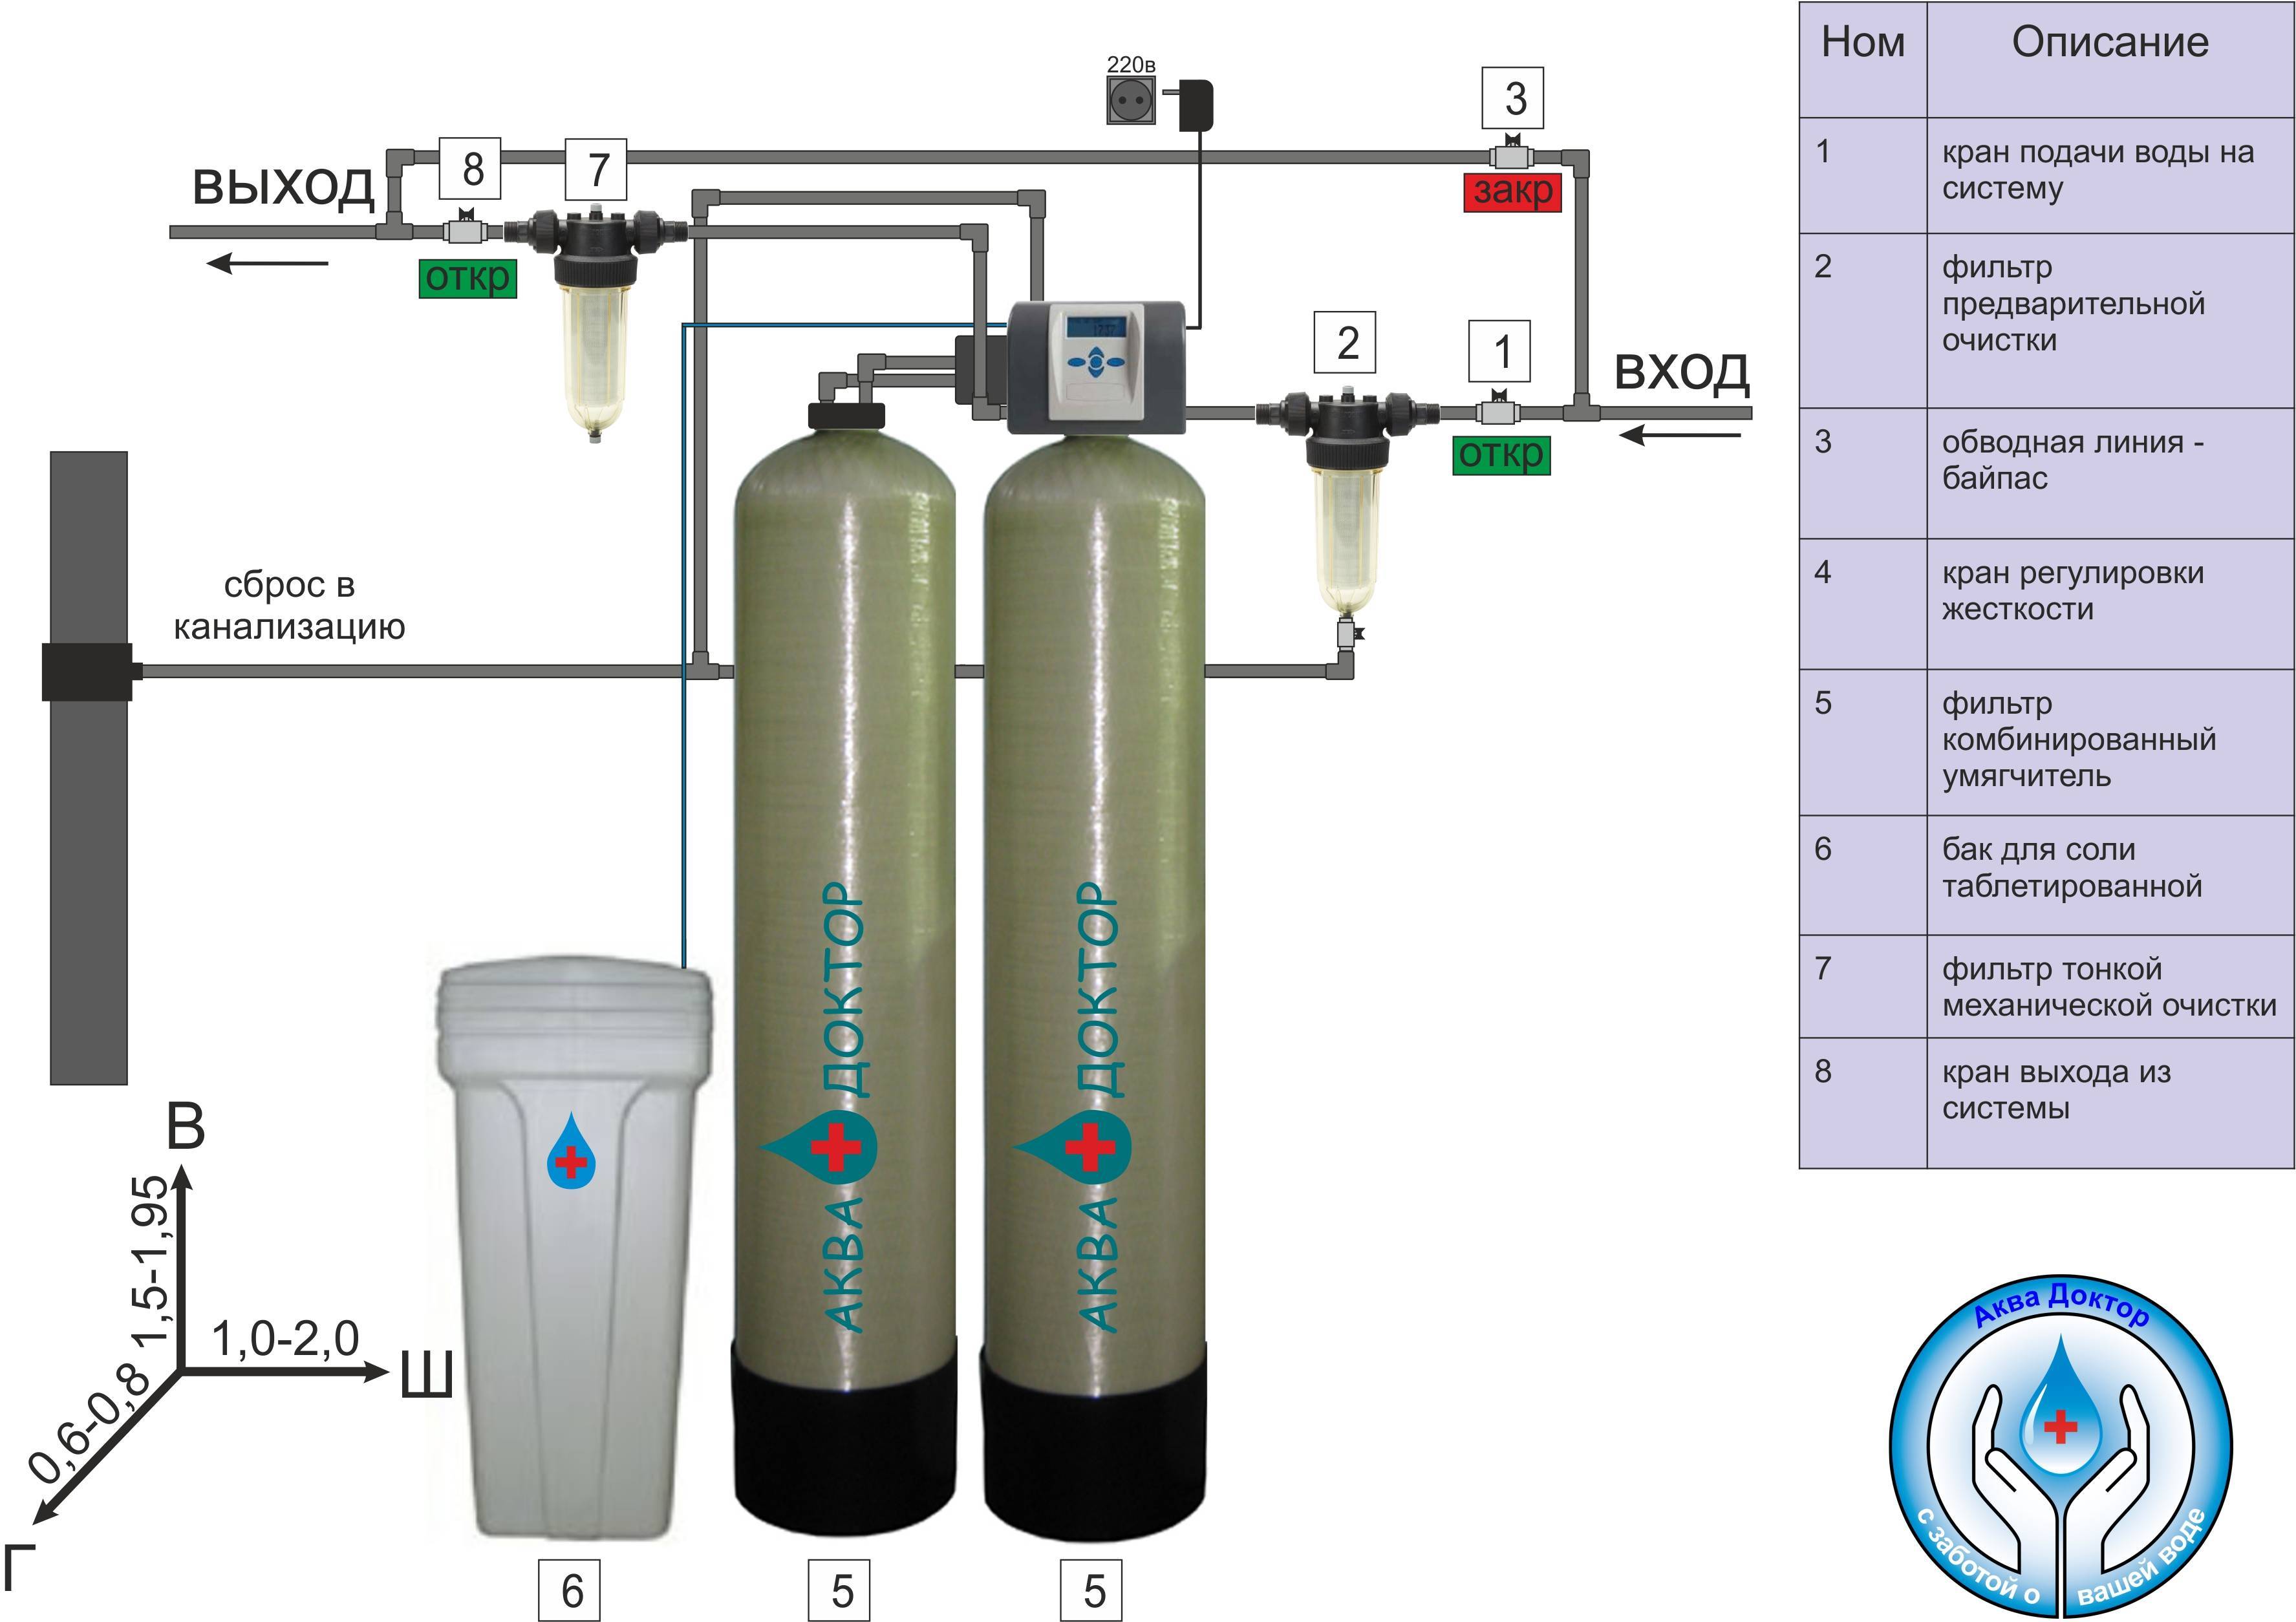 Дистиллированная вода в систему отопления частного дома